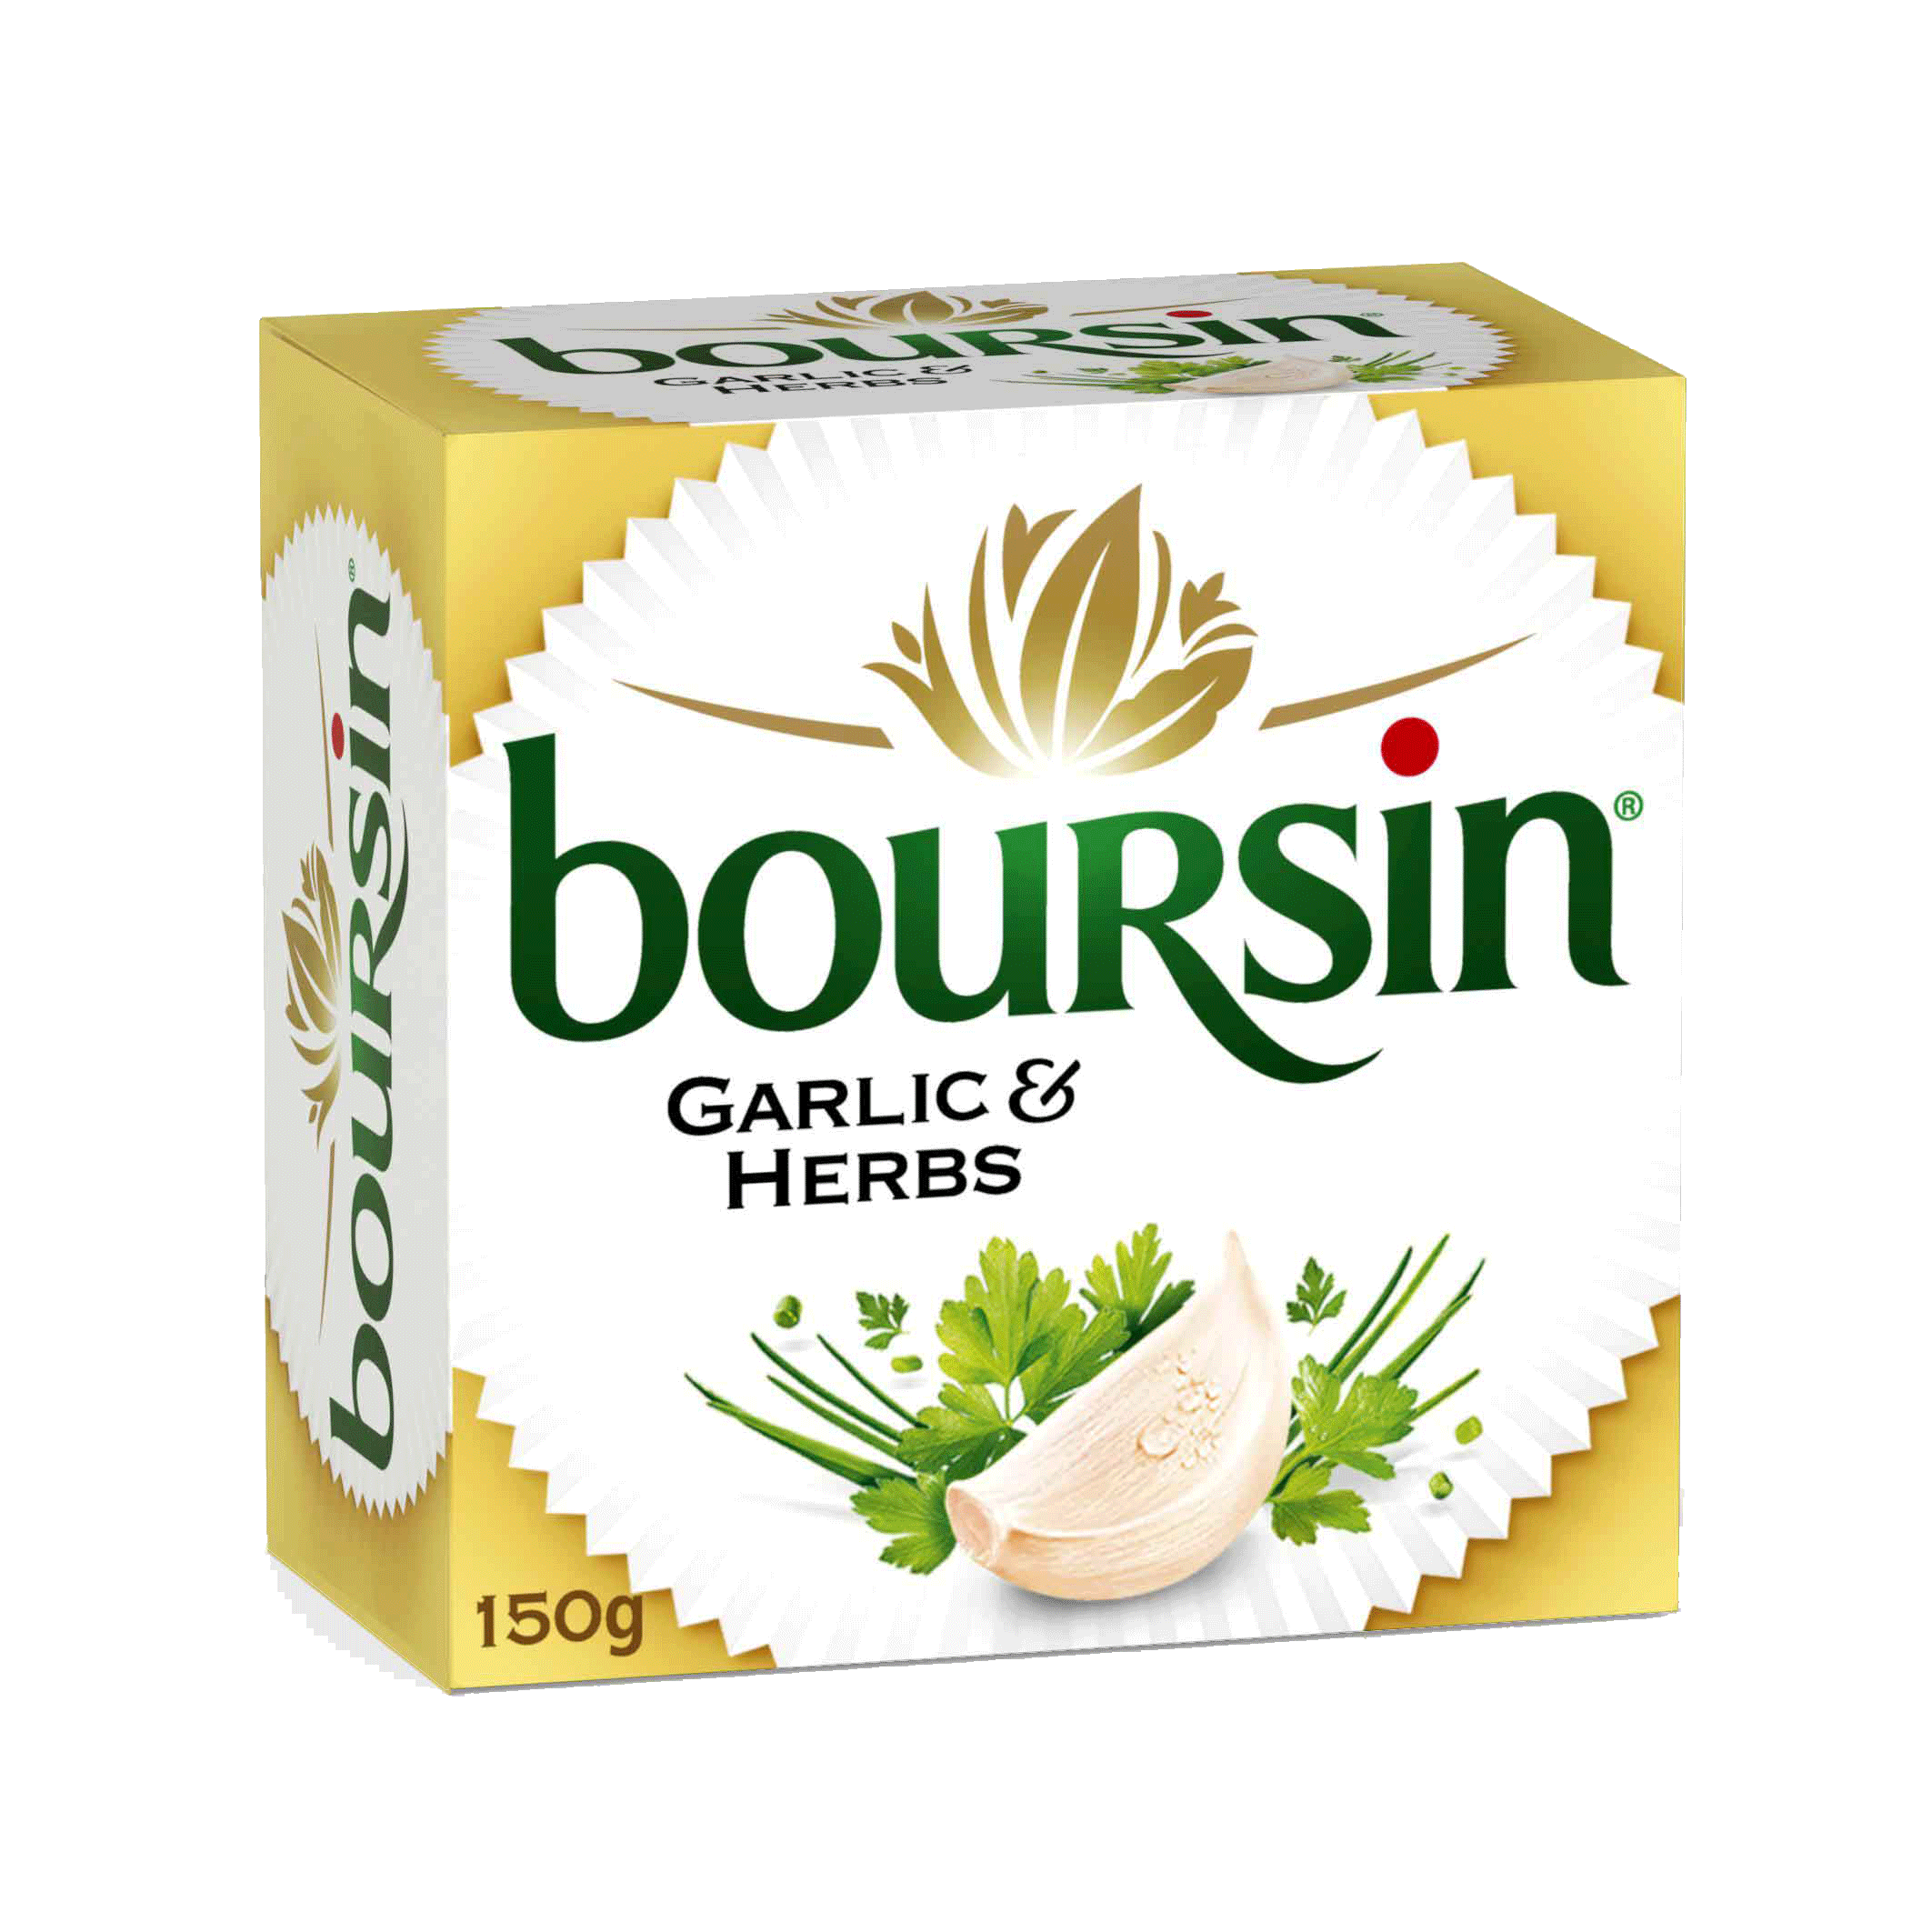 Boursin